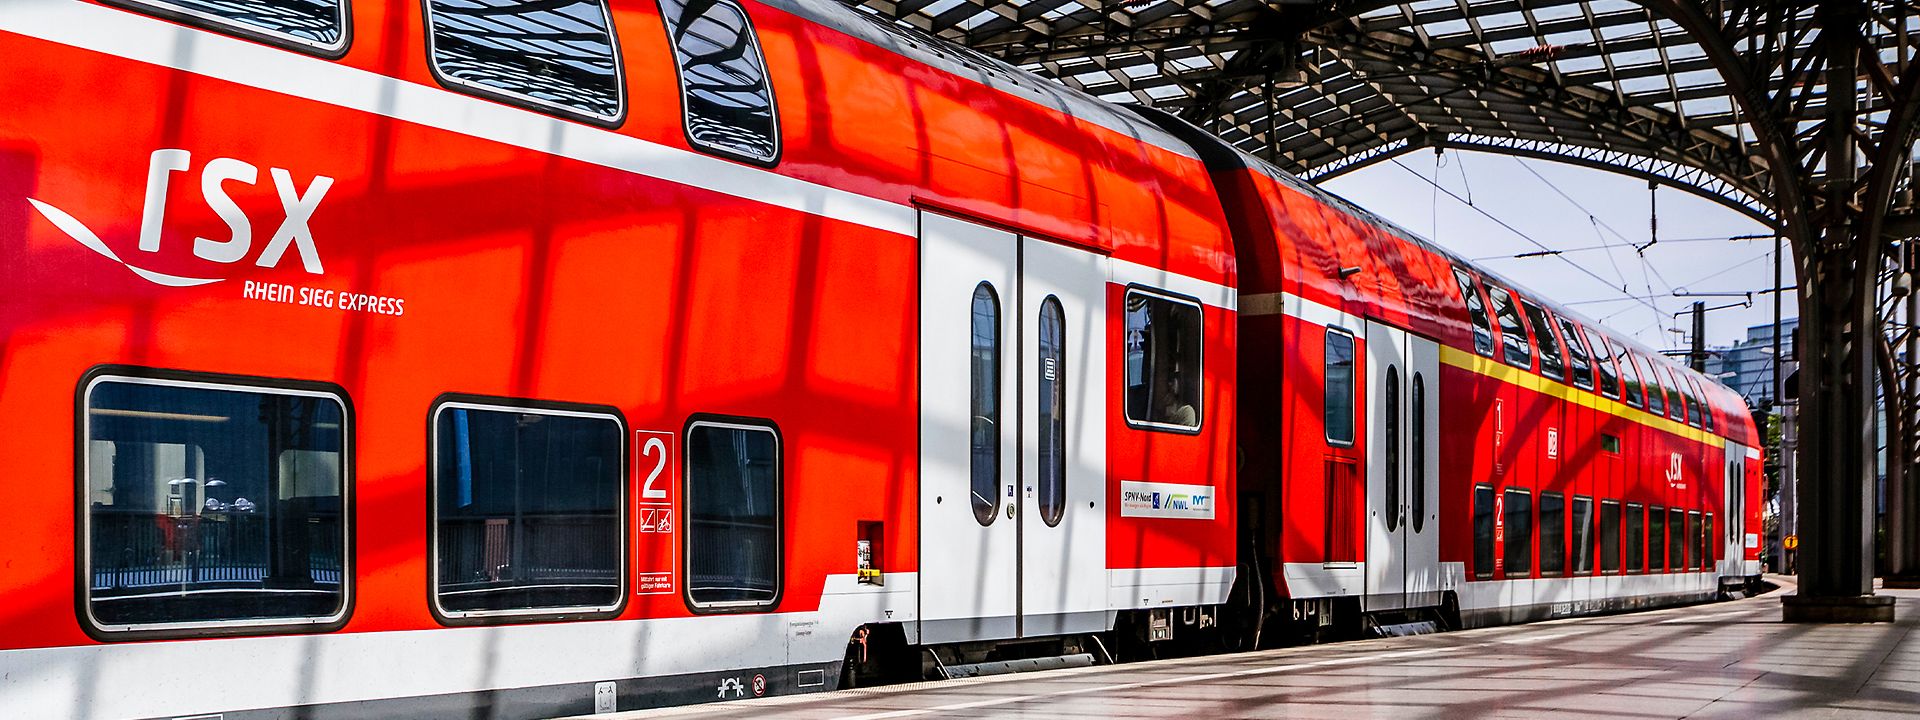 Roter RSX-Doppelstockwagen an einem Gleis in einem überdachten Bahnhof, das RSX-Logo ist an der Seite gut sichtbar